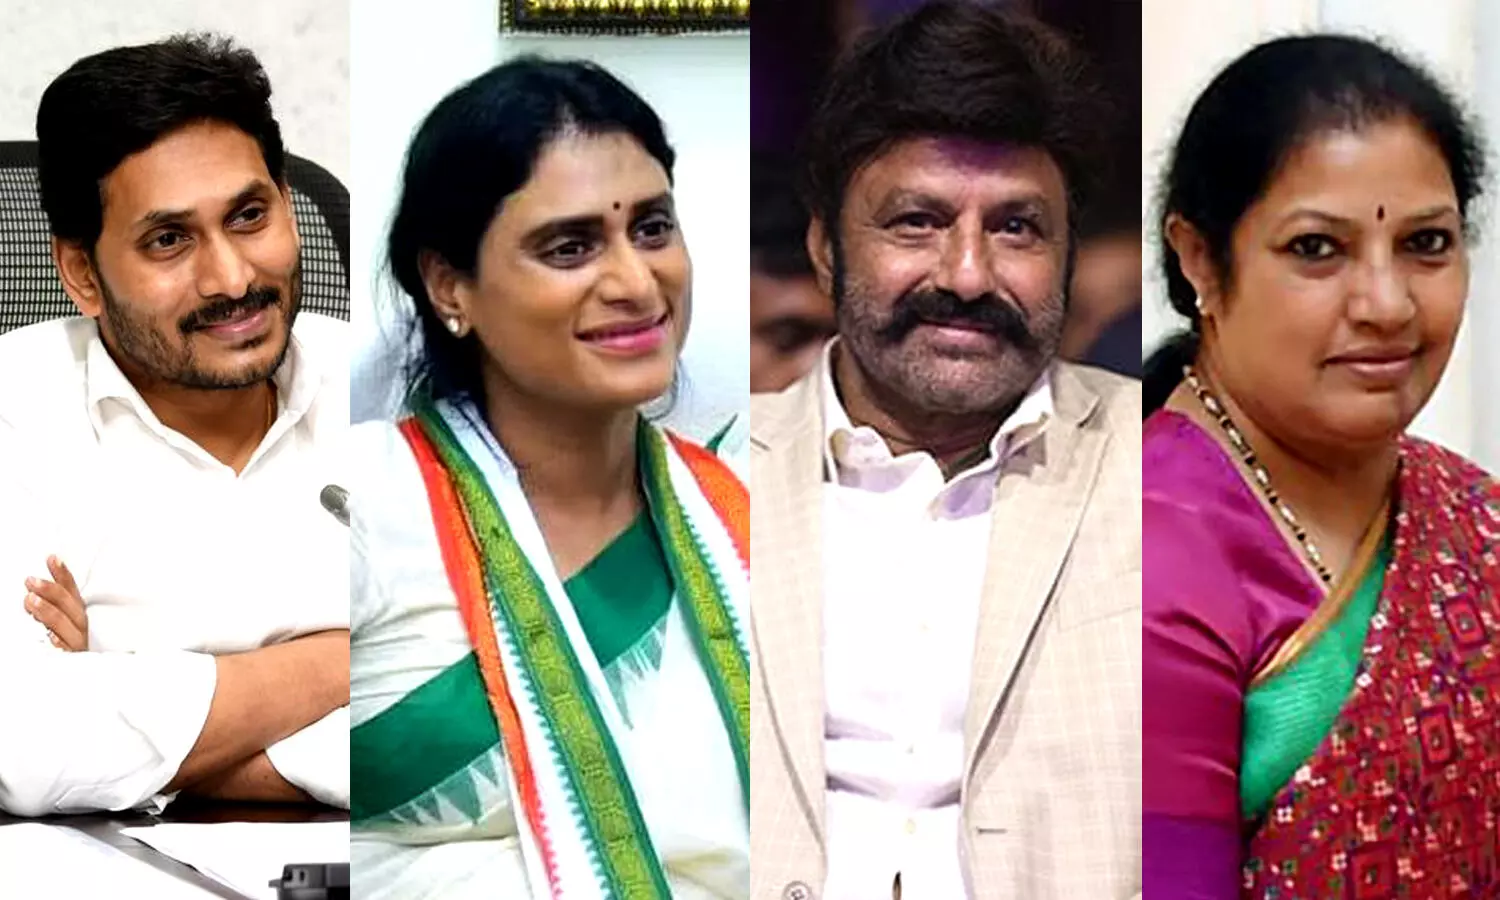 2 ex-CMs, 7 children of 4 ex-CMs, enter poll battle in Andhra Pradesh